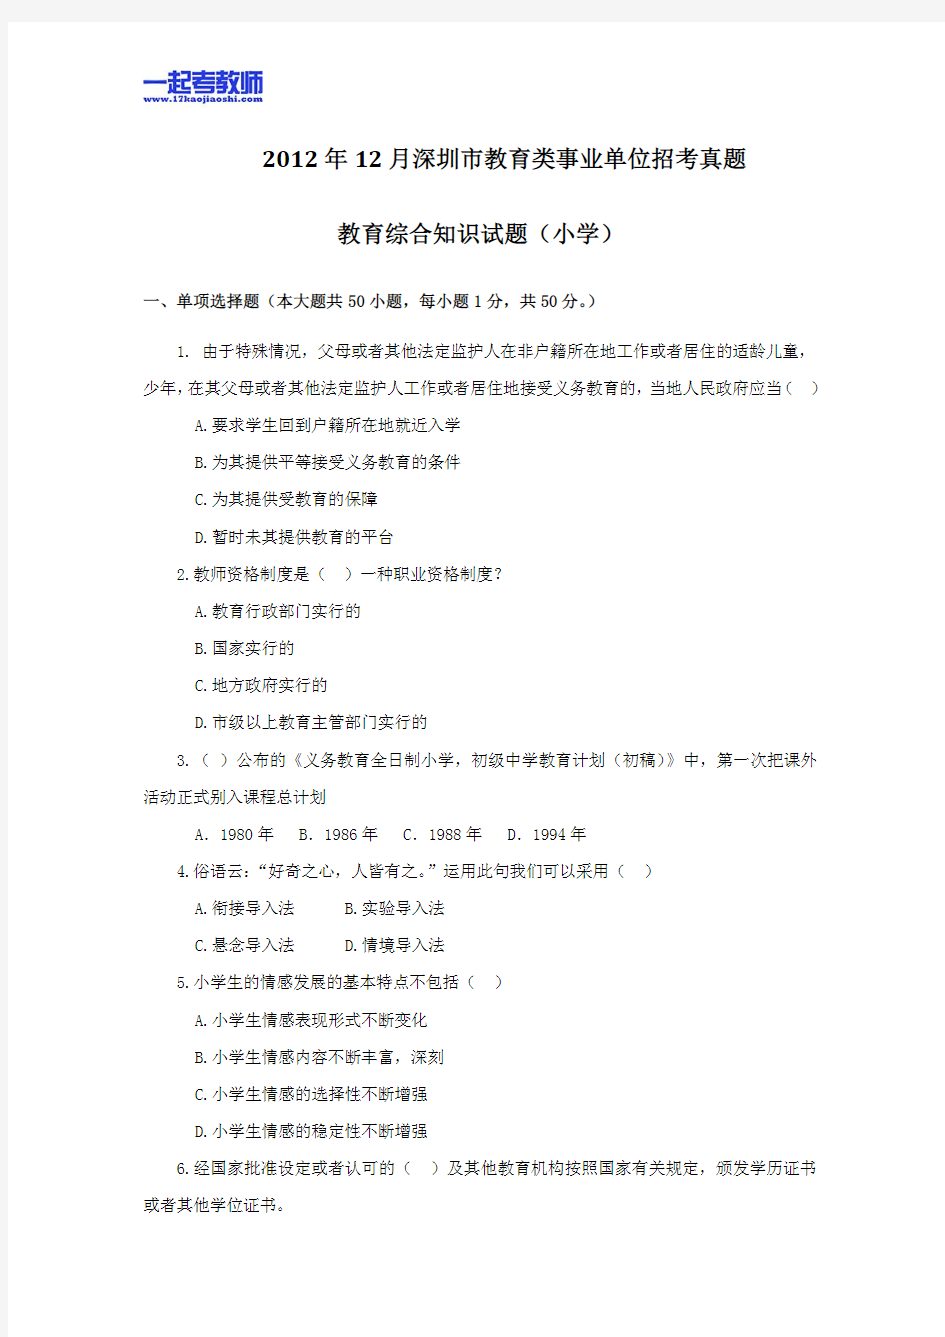 2013年深圳市教师招聘考试笔试小学学段教育综合真题答案解析